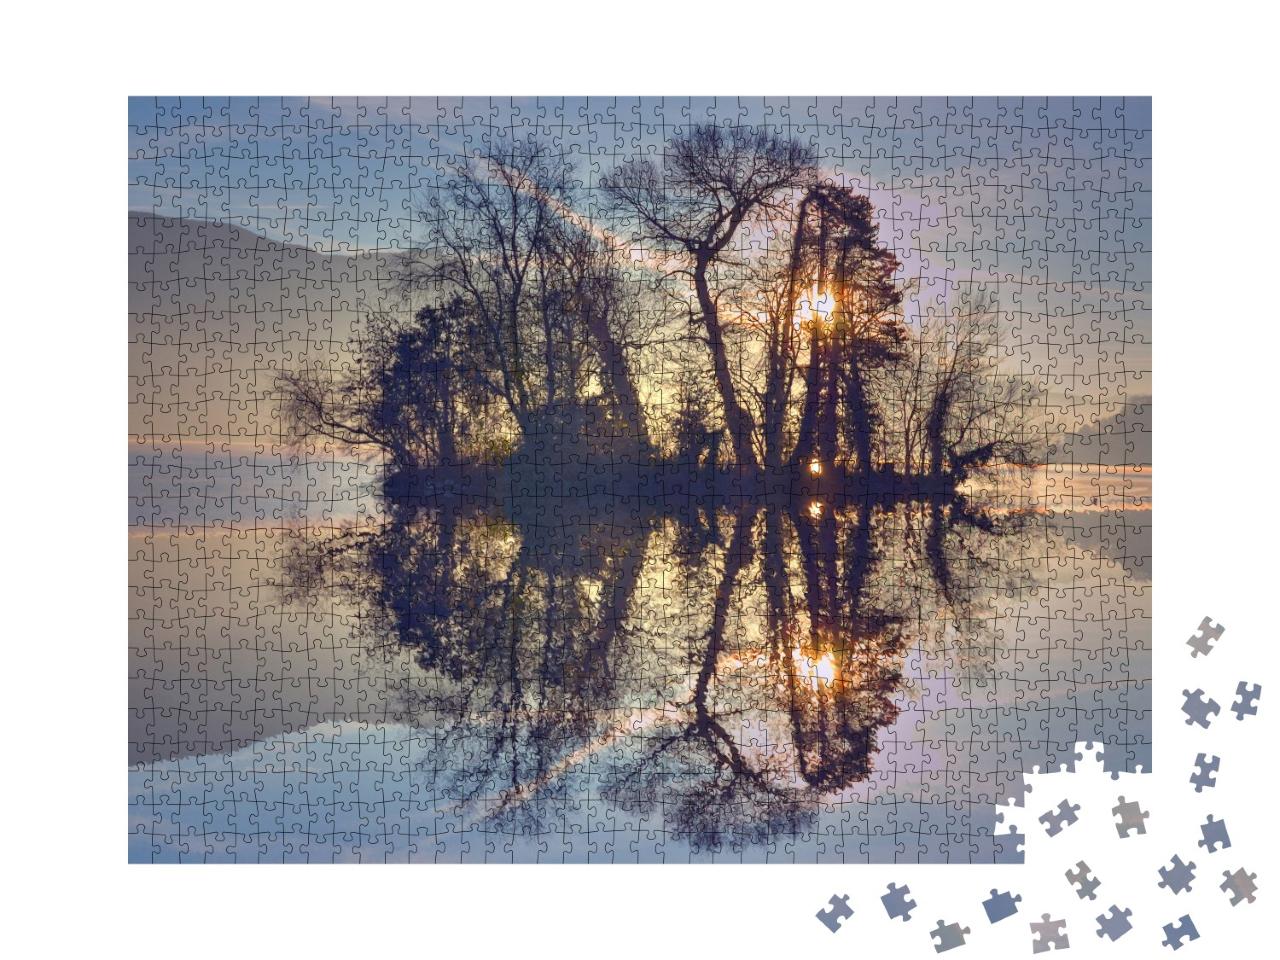 Puzzle de 1000 pièces « Reflet matinal des arbres sur une petite île du lac d'Annecy France. »